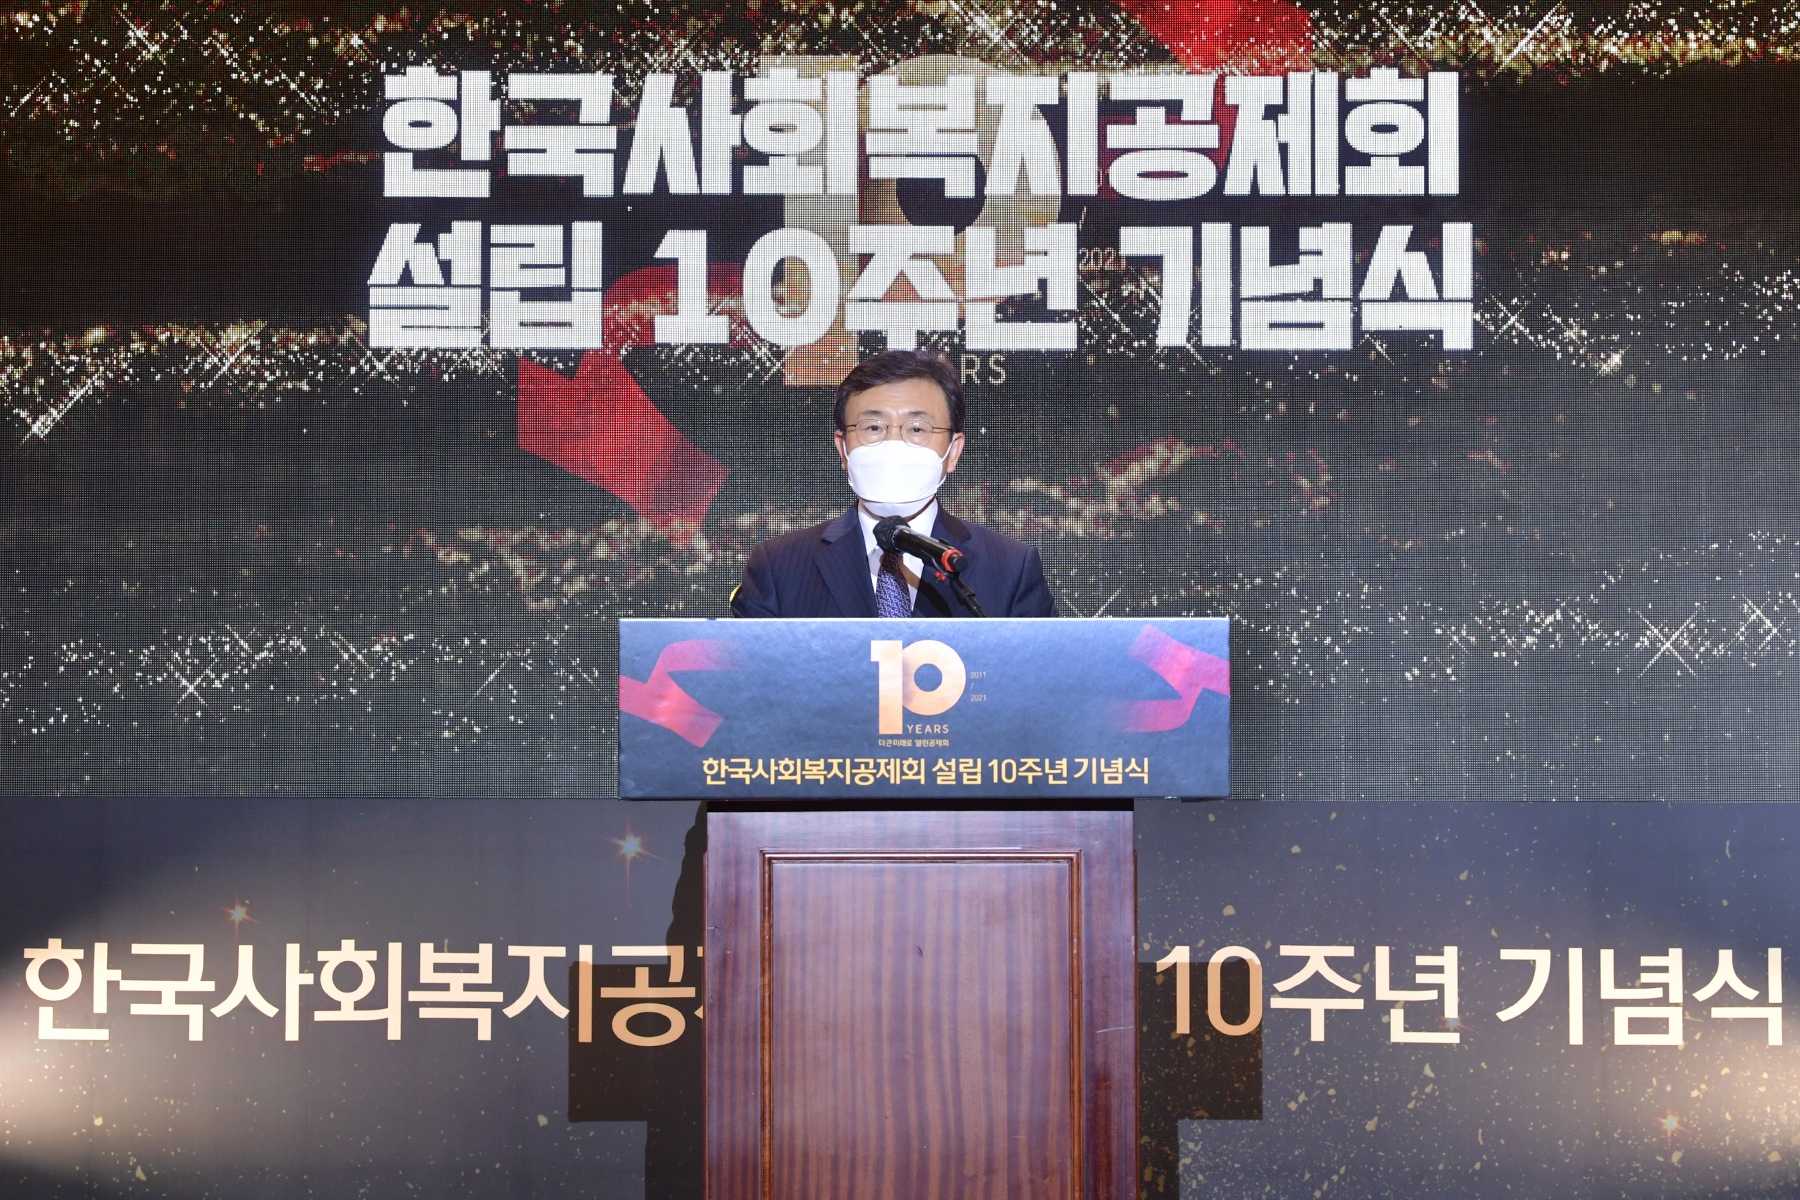 지난 9일 열린 한국사회복지공제회 10주년 기념식에 참석한 권덕철 보건복지부 장관이 격려사를 하고 있다. 한국사회복지공제회 제공